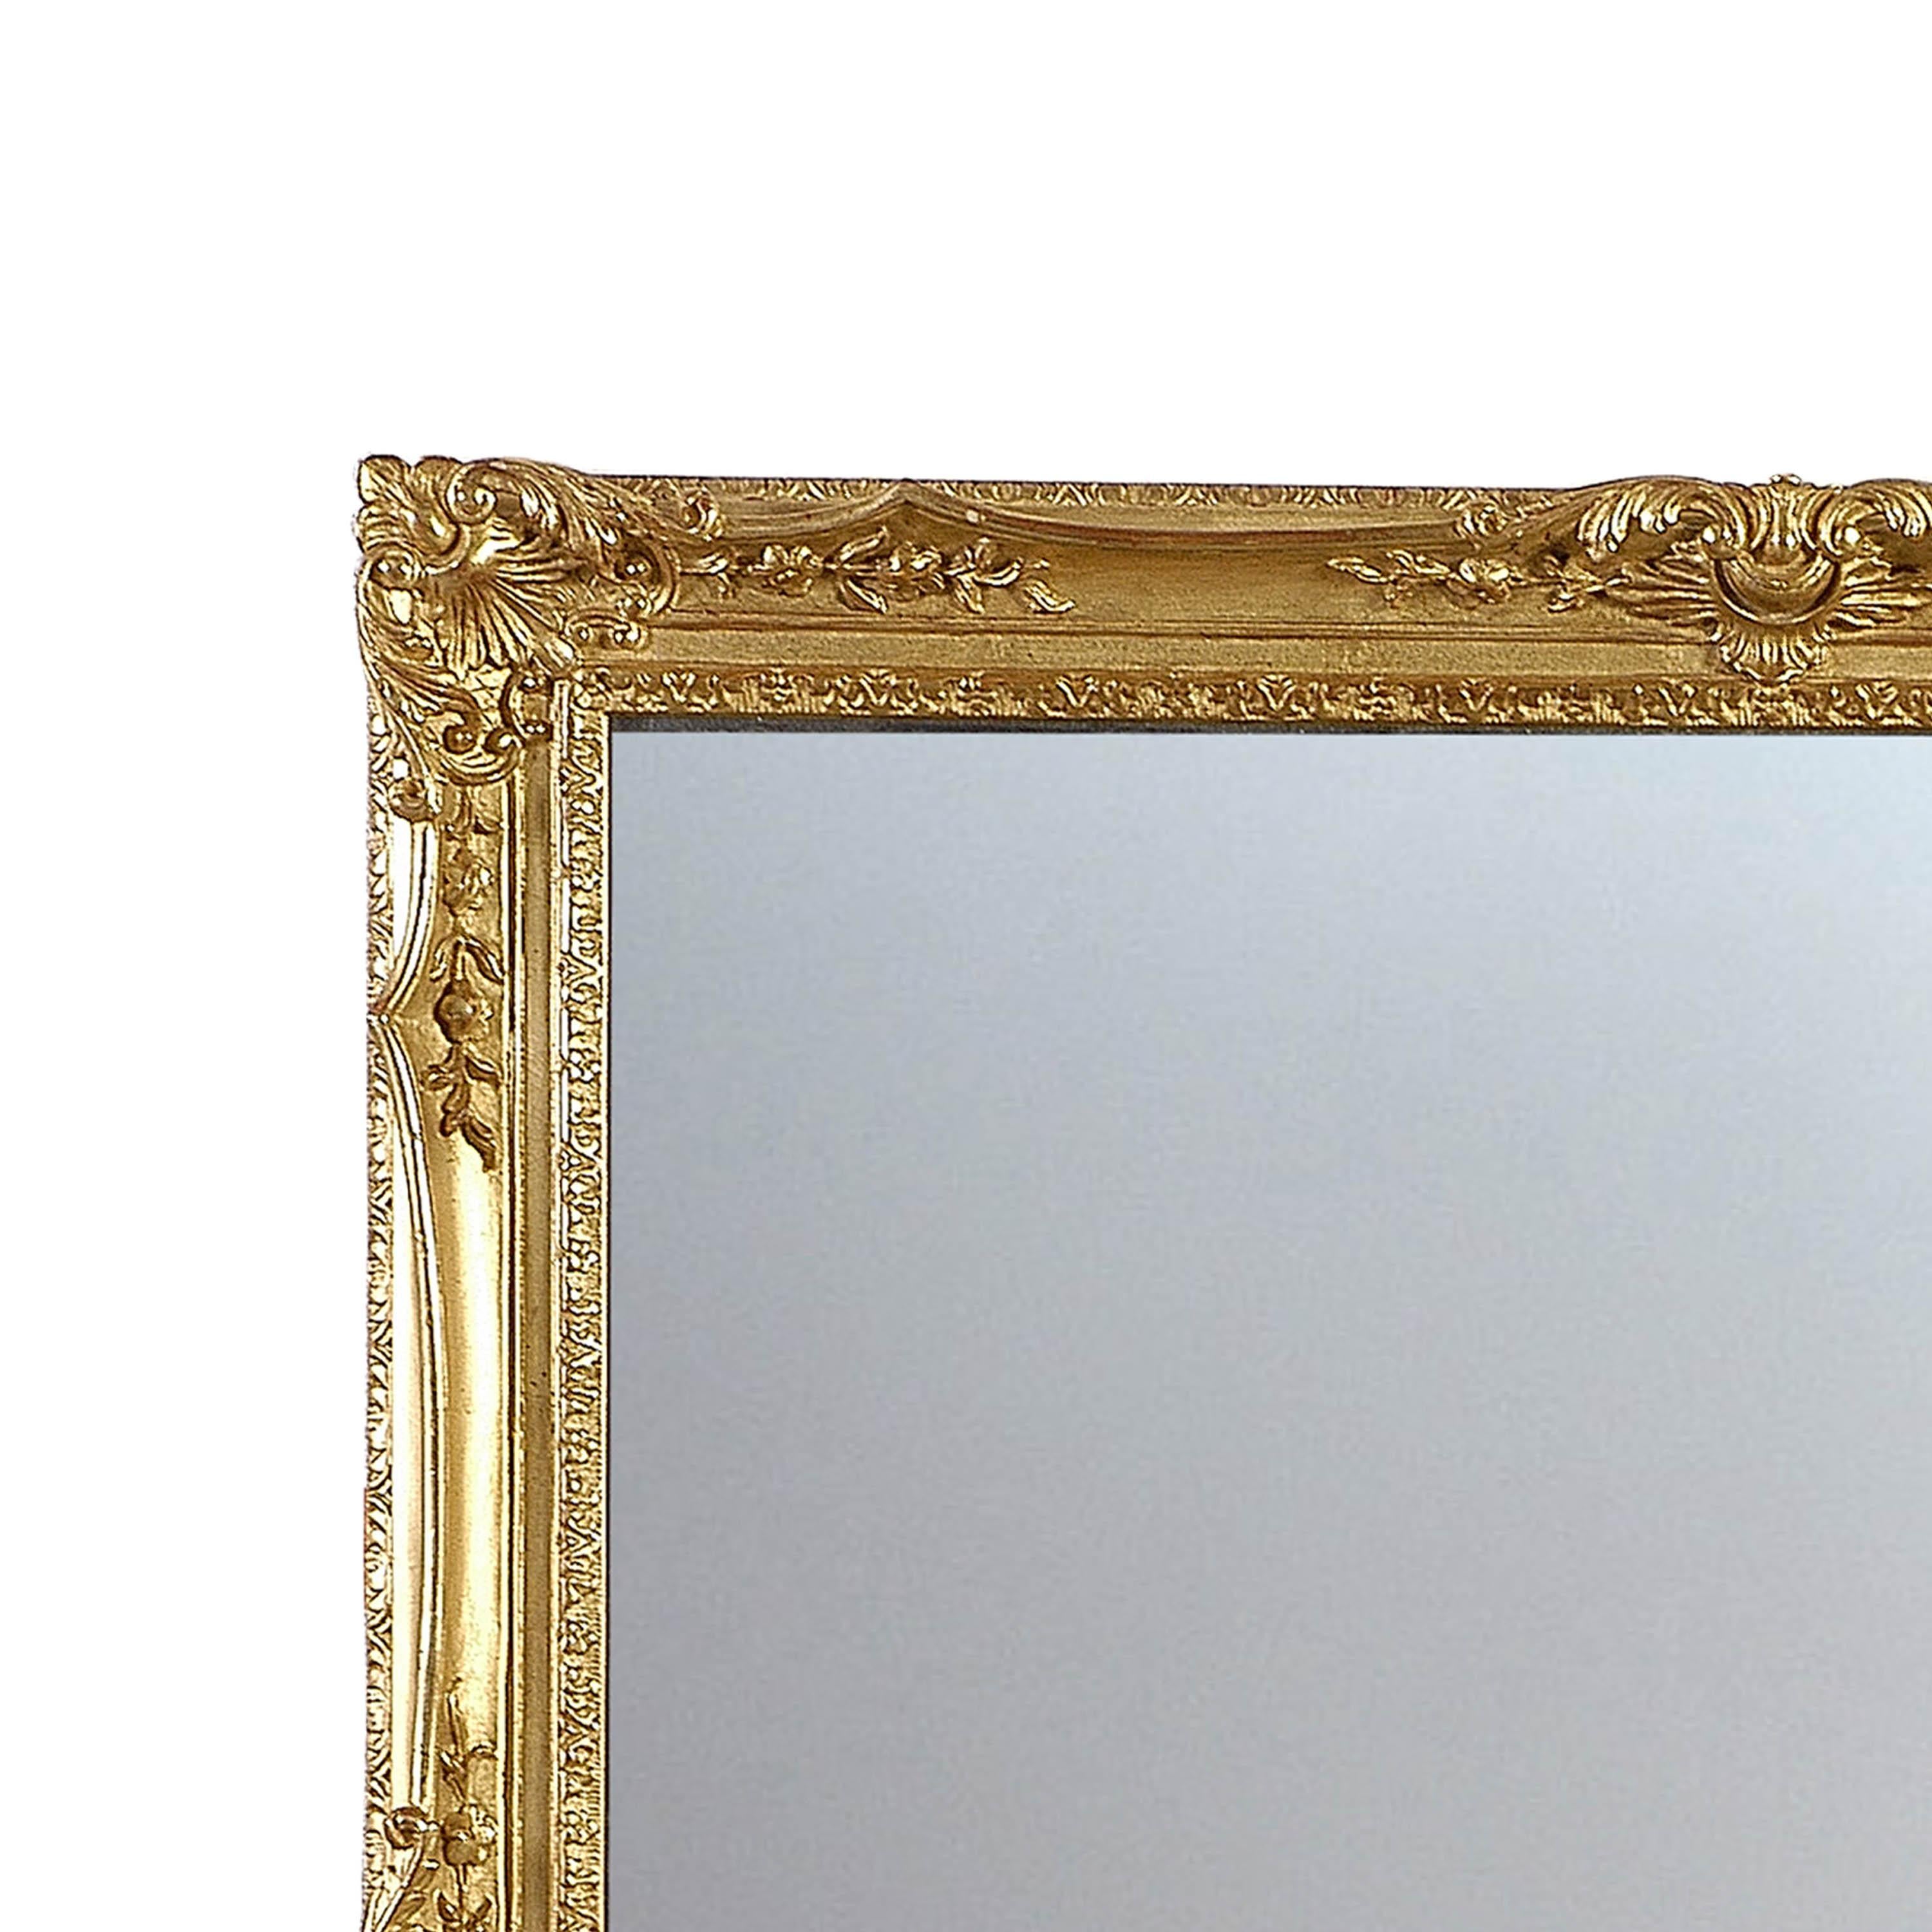 Handgefertigter Spiegel im neoklassizistischen Regency-Stil. Rechteckige und geschnitzte Holzstruktur mit Goldfolie veredelt. Spanien, 1970.